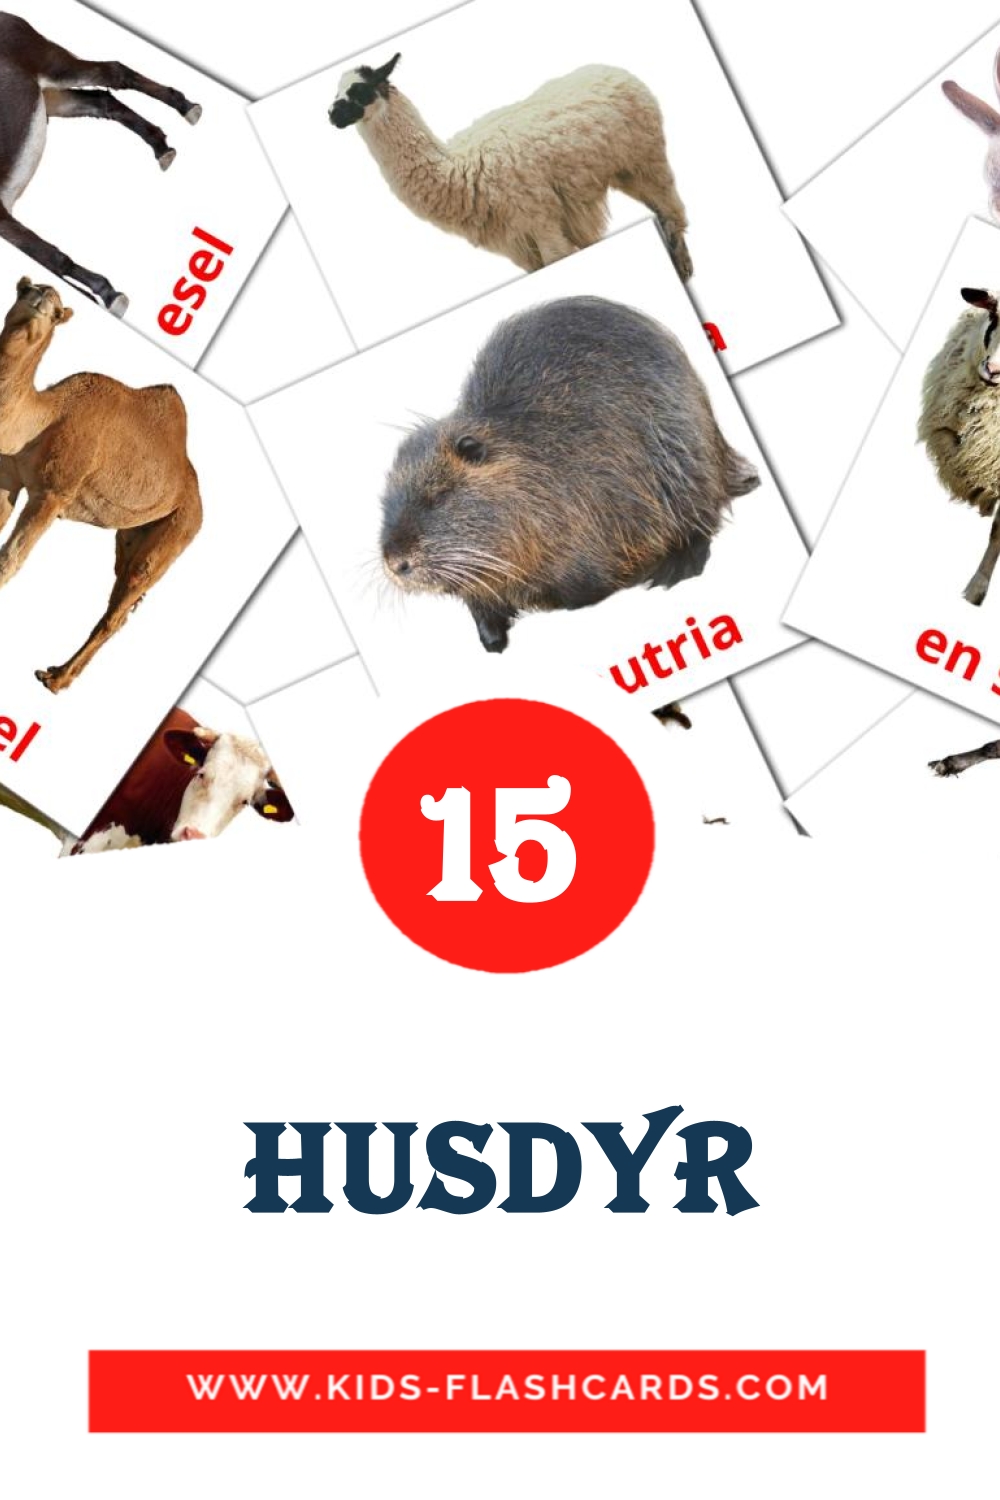 15 carte illustrate di husdyr per la scuola materna in norvegese